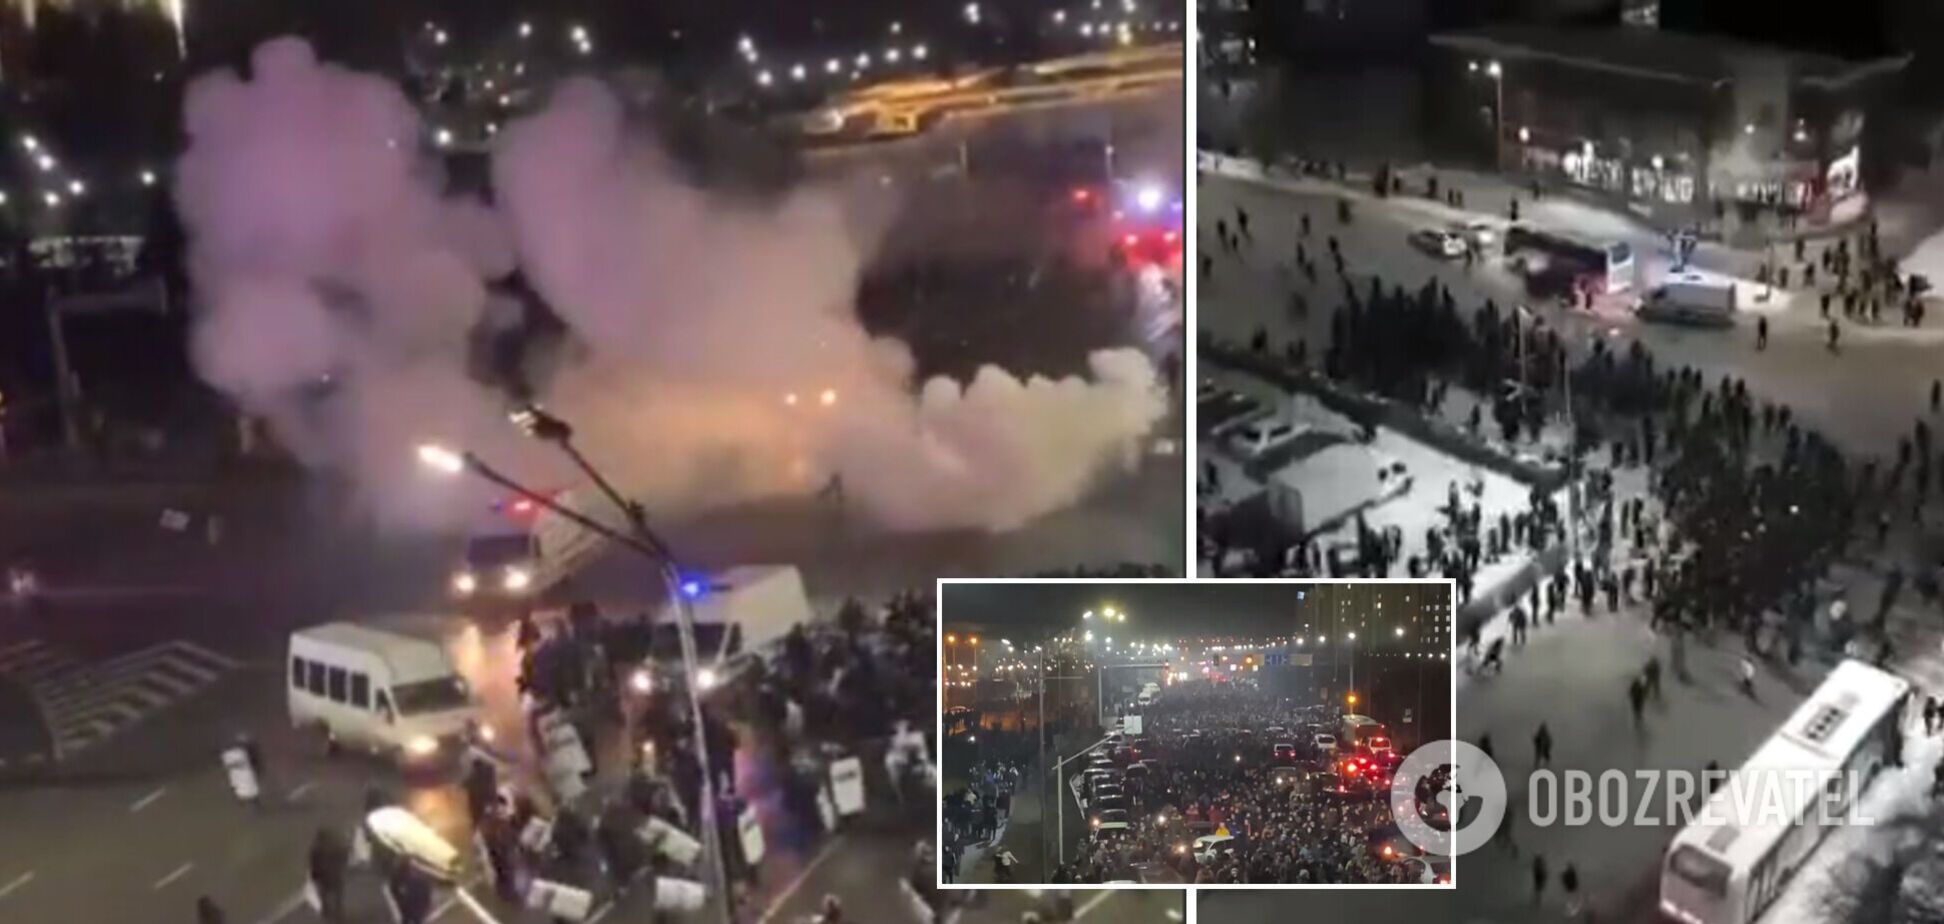 Слышны взрывы, все затянуло дымом: в Алматы начались стычки между полицией и протестующими. Фото и видео